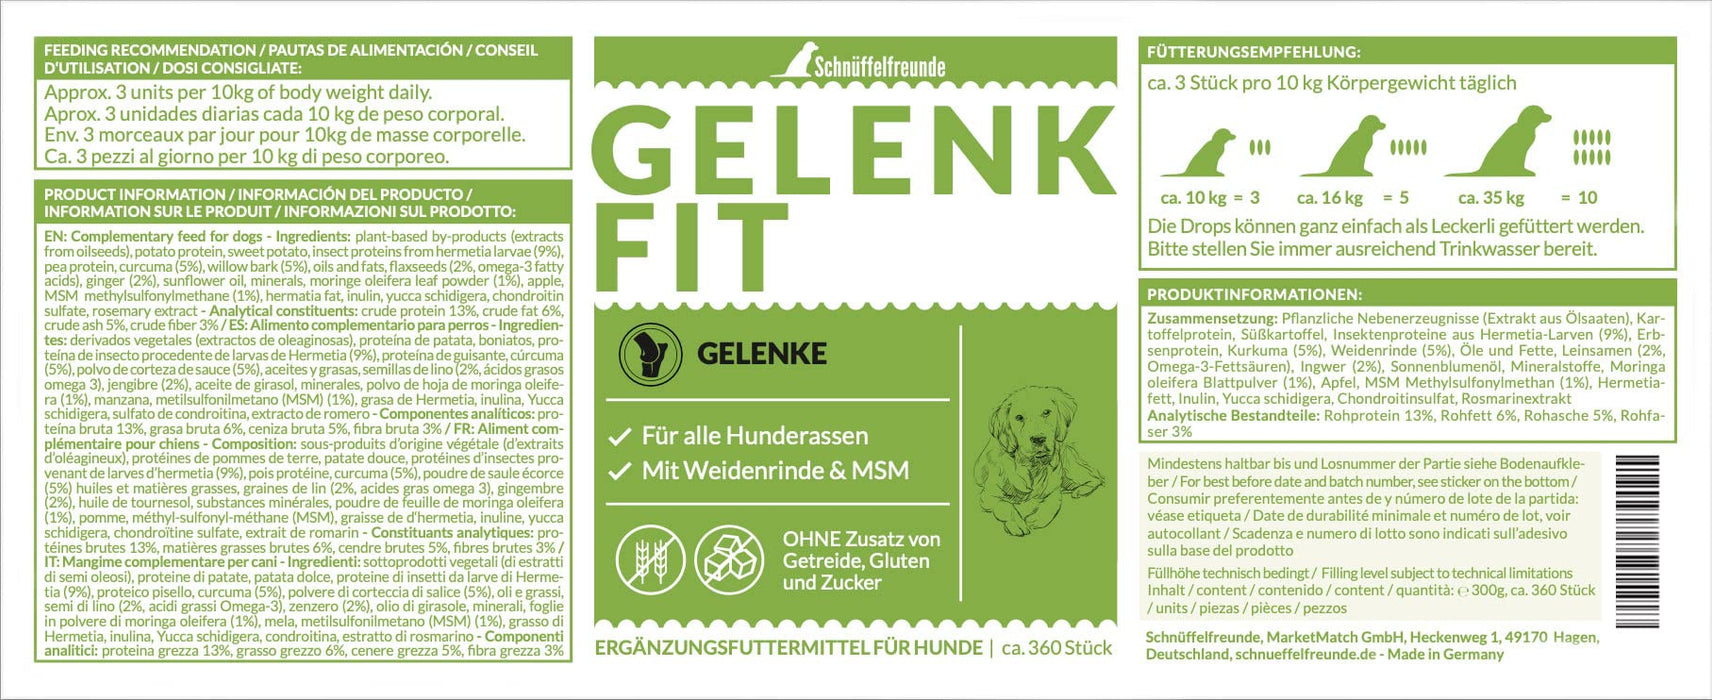 Schnüffelfreunde GelenkFit I Suplementy na stawy dla psów Tabletki na stawy i kości - Suplement diety dla psów - Wyprodukowano w Niemczech (300g)